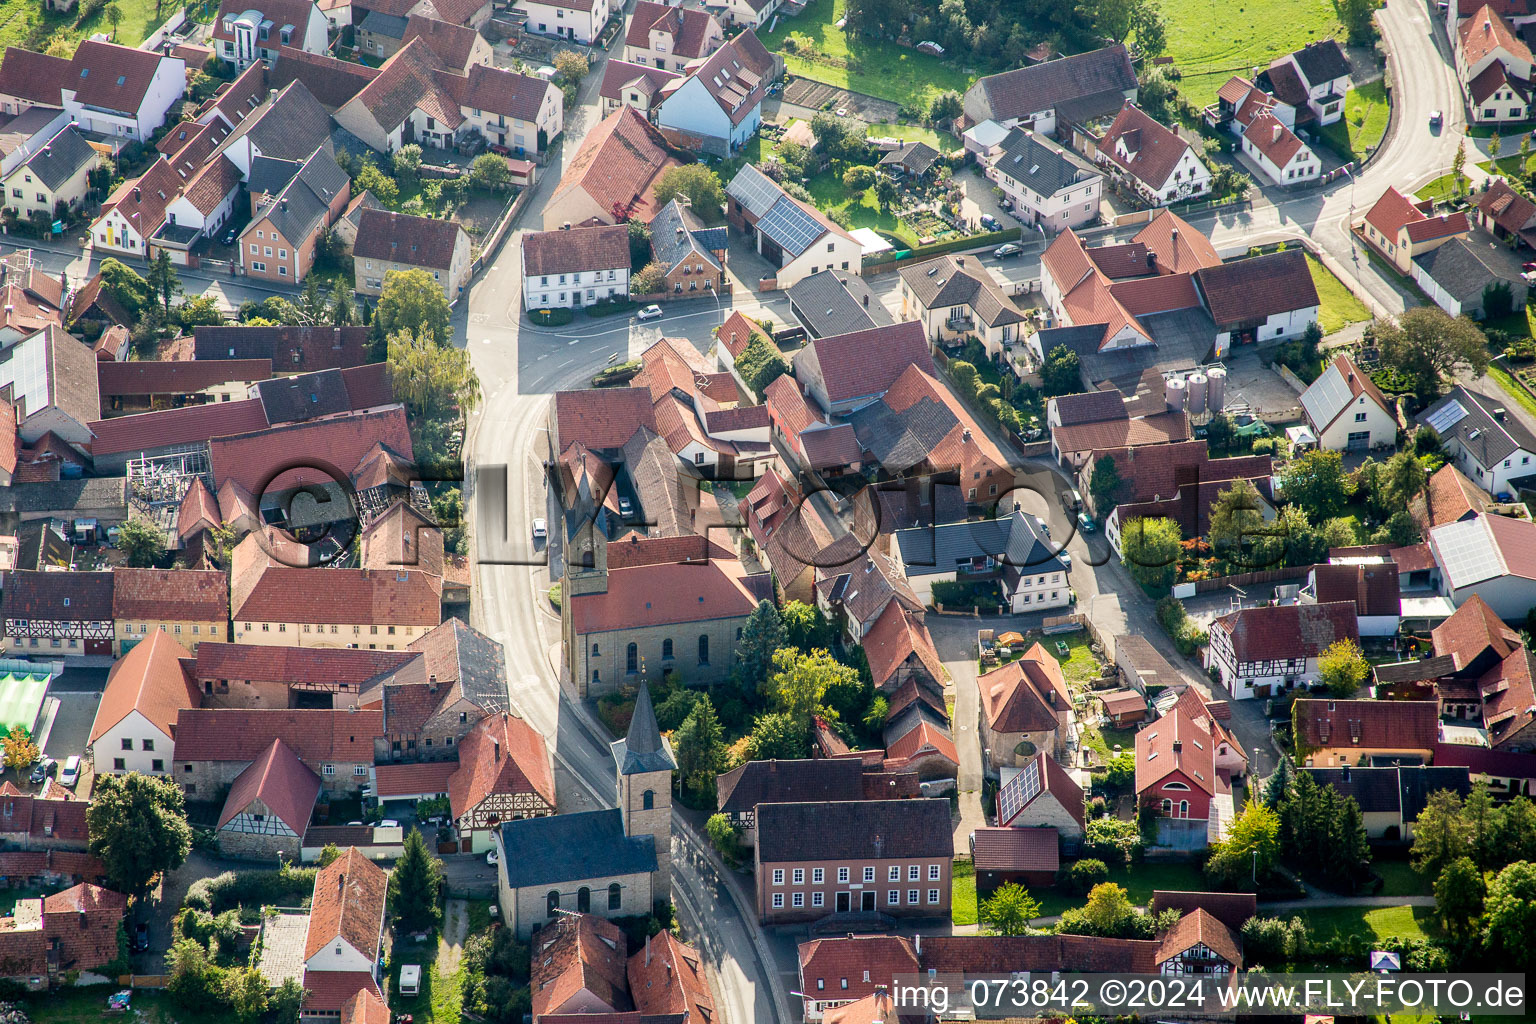 Vue aérienne de Bâtiment d'église au centre du village à Westheim dans le département Bavière, Allemagne